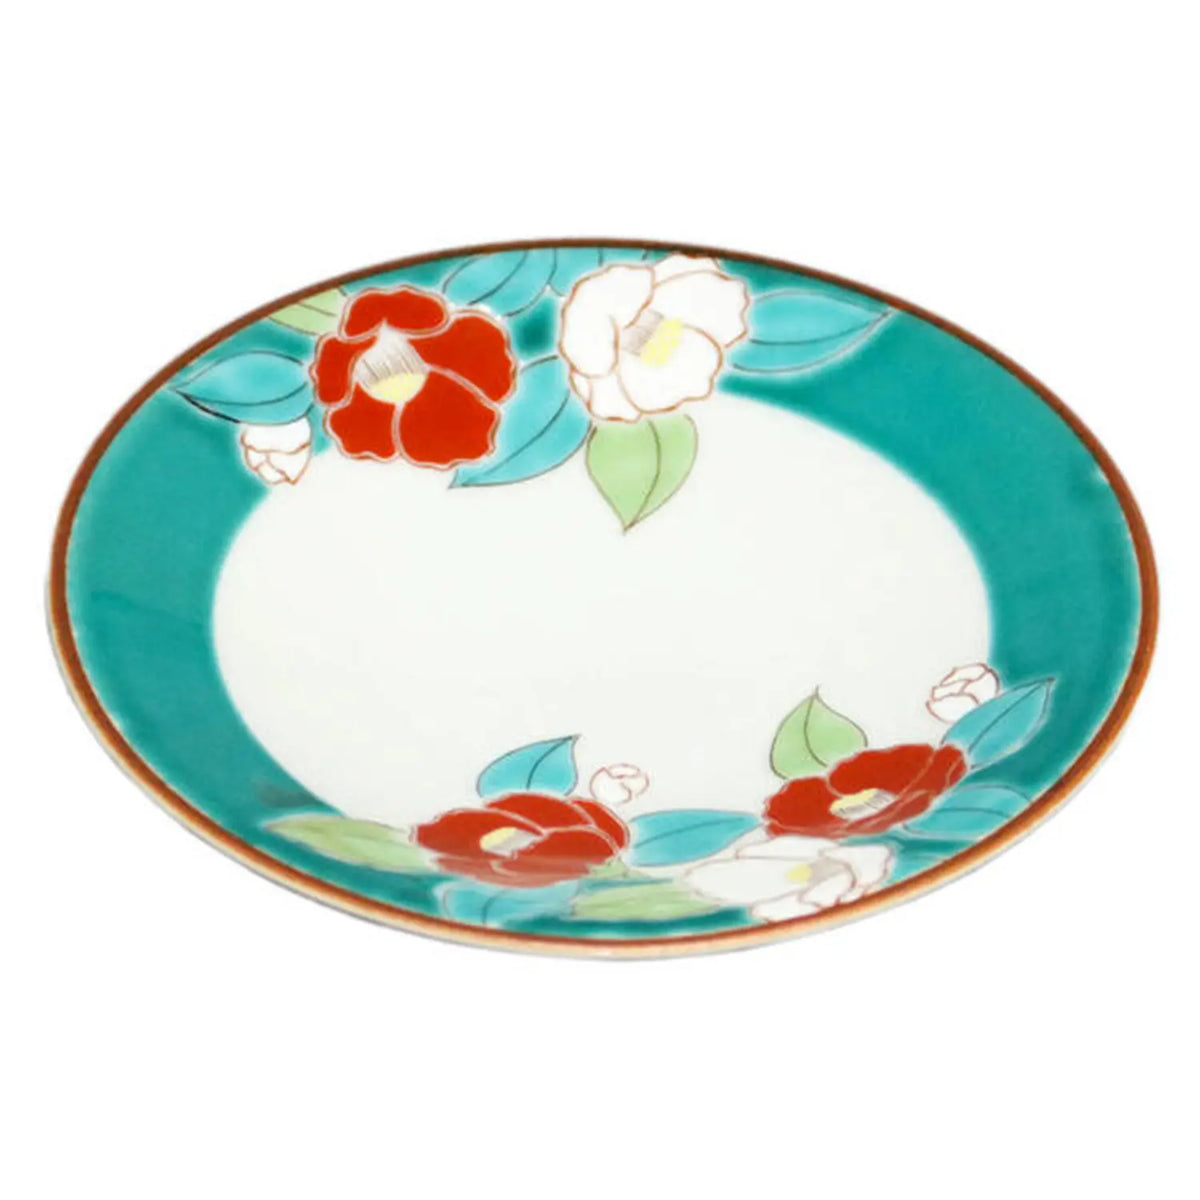 SEIKOU SHIKI-NO-HANA Kutani Porcelain Plate 13.8cm Camellia